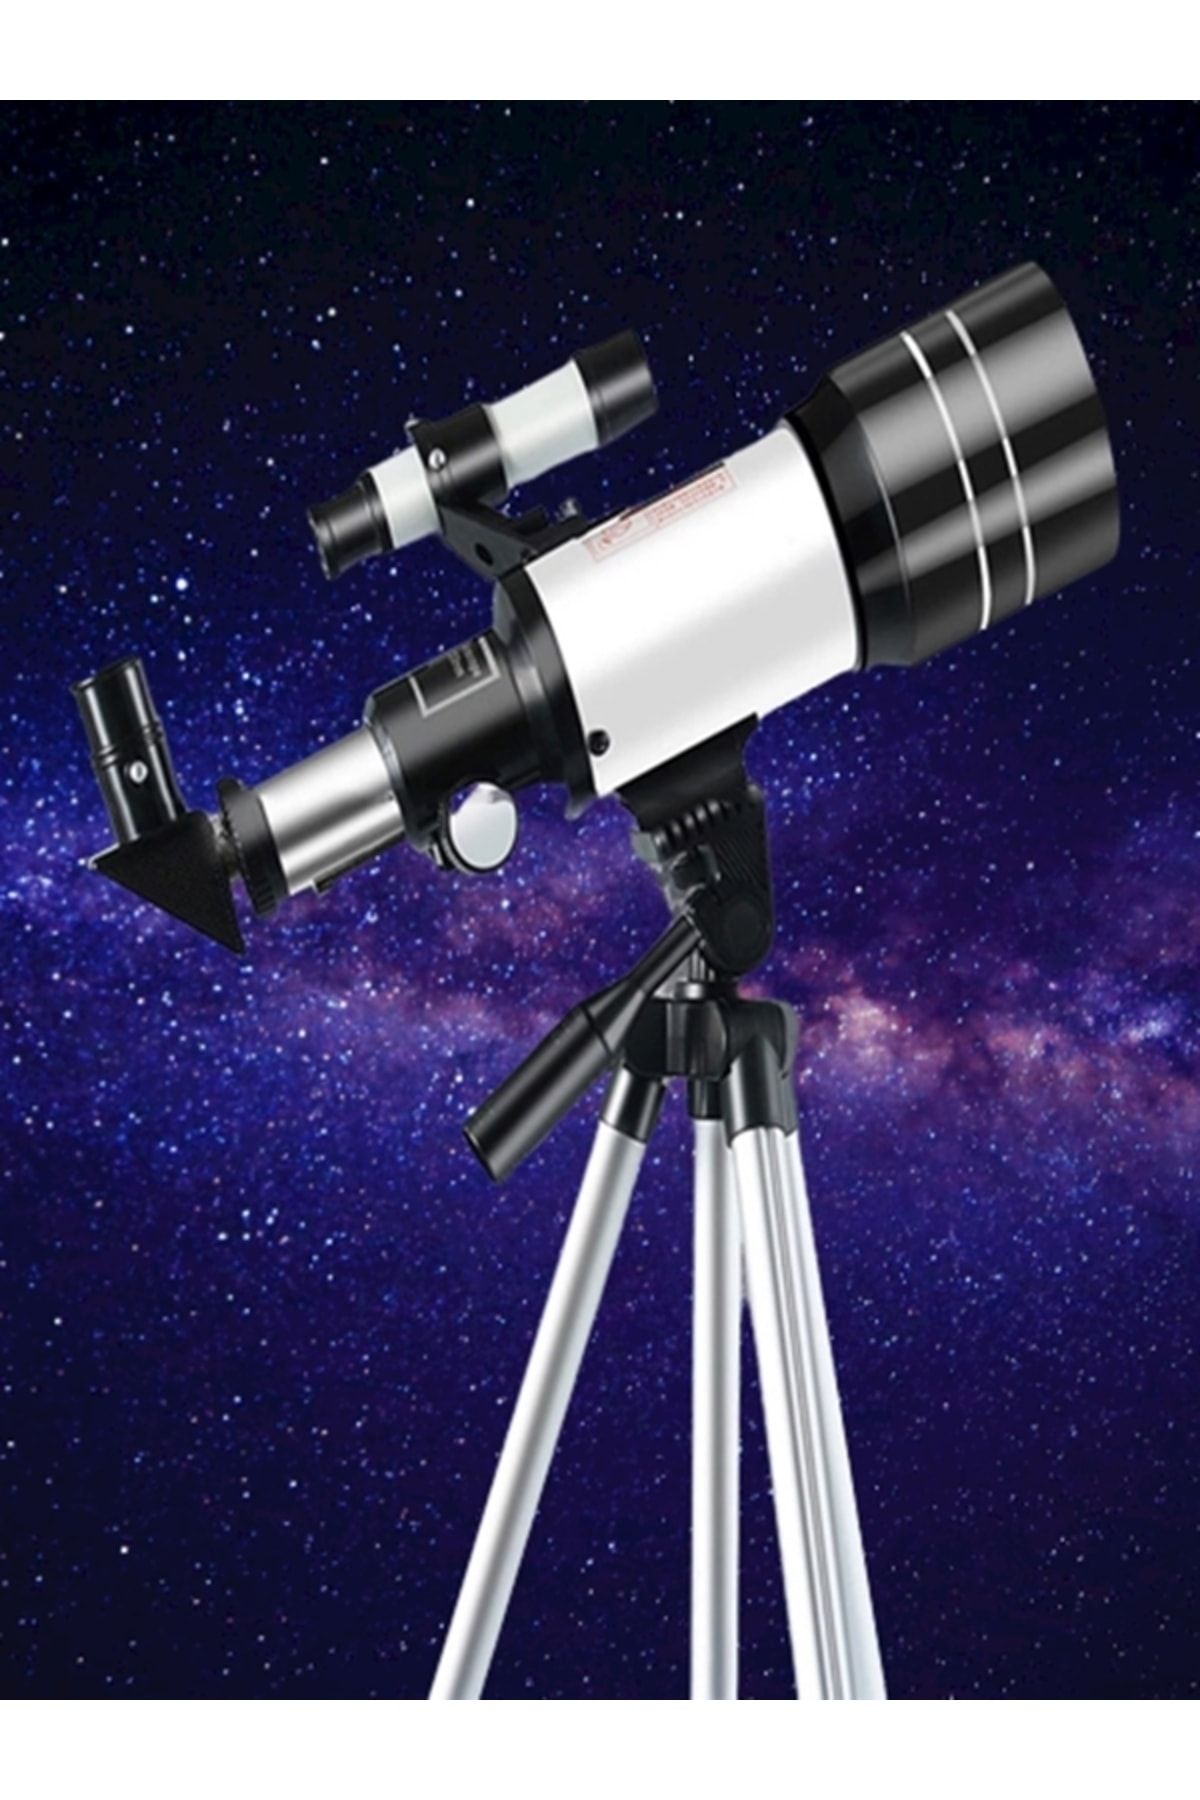 gaman Profesyonel Astronomik Teleskop Azm70300m Kara Ve Gökyüzü Gözlem Teleskopu